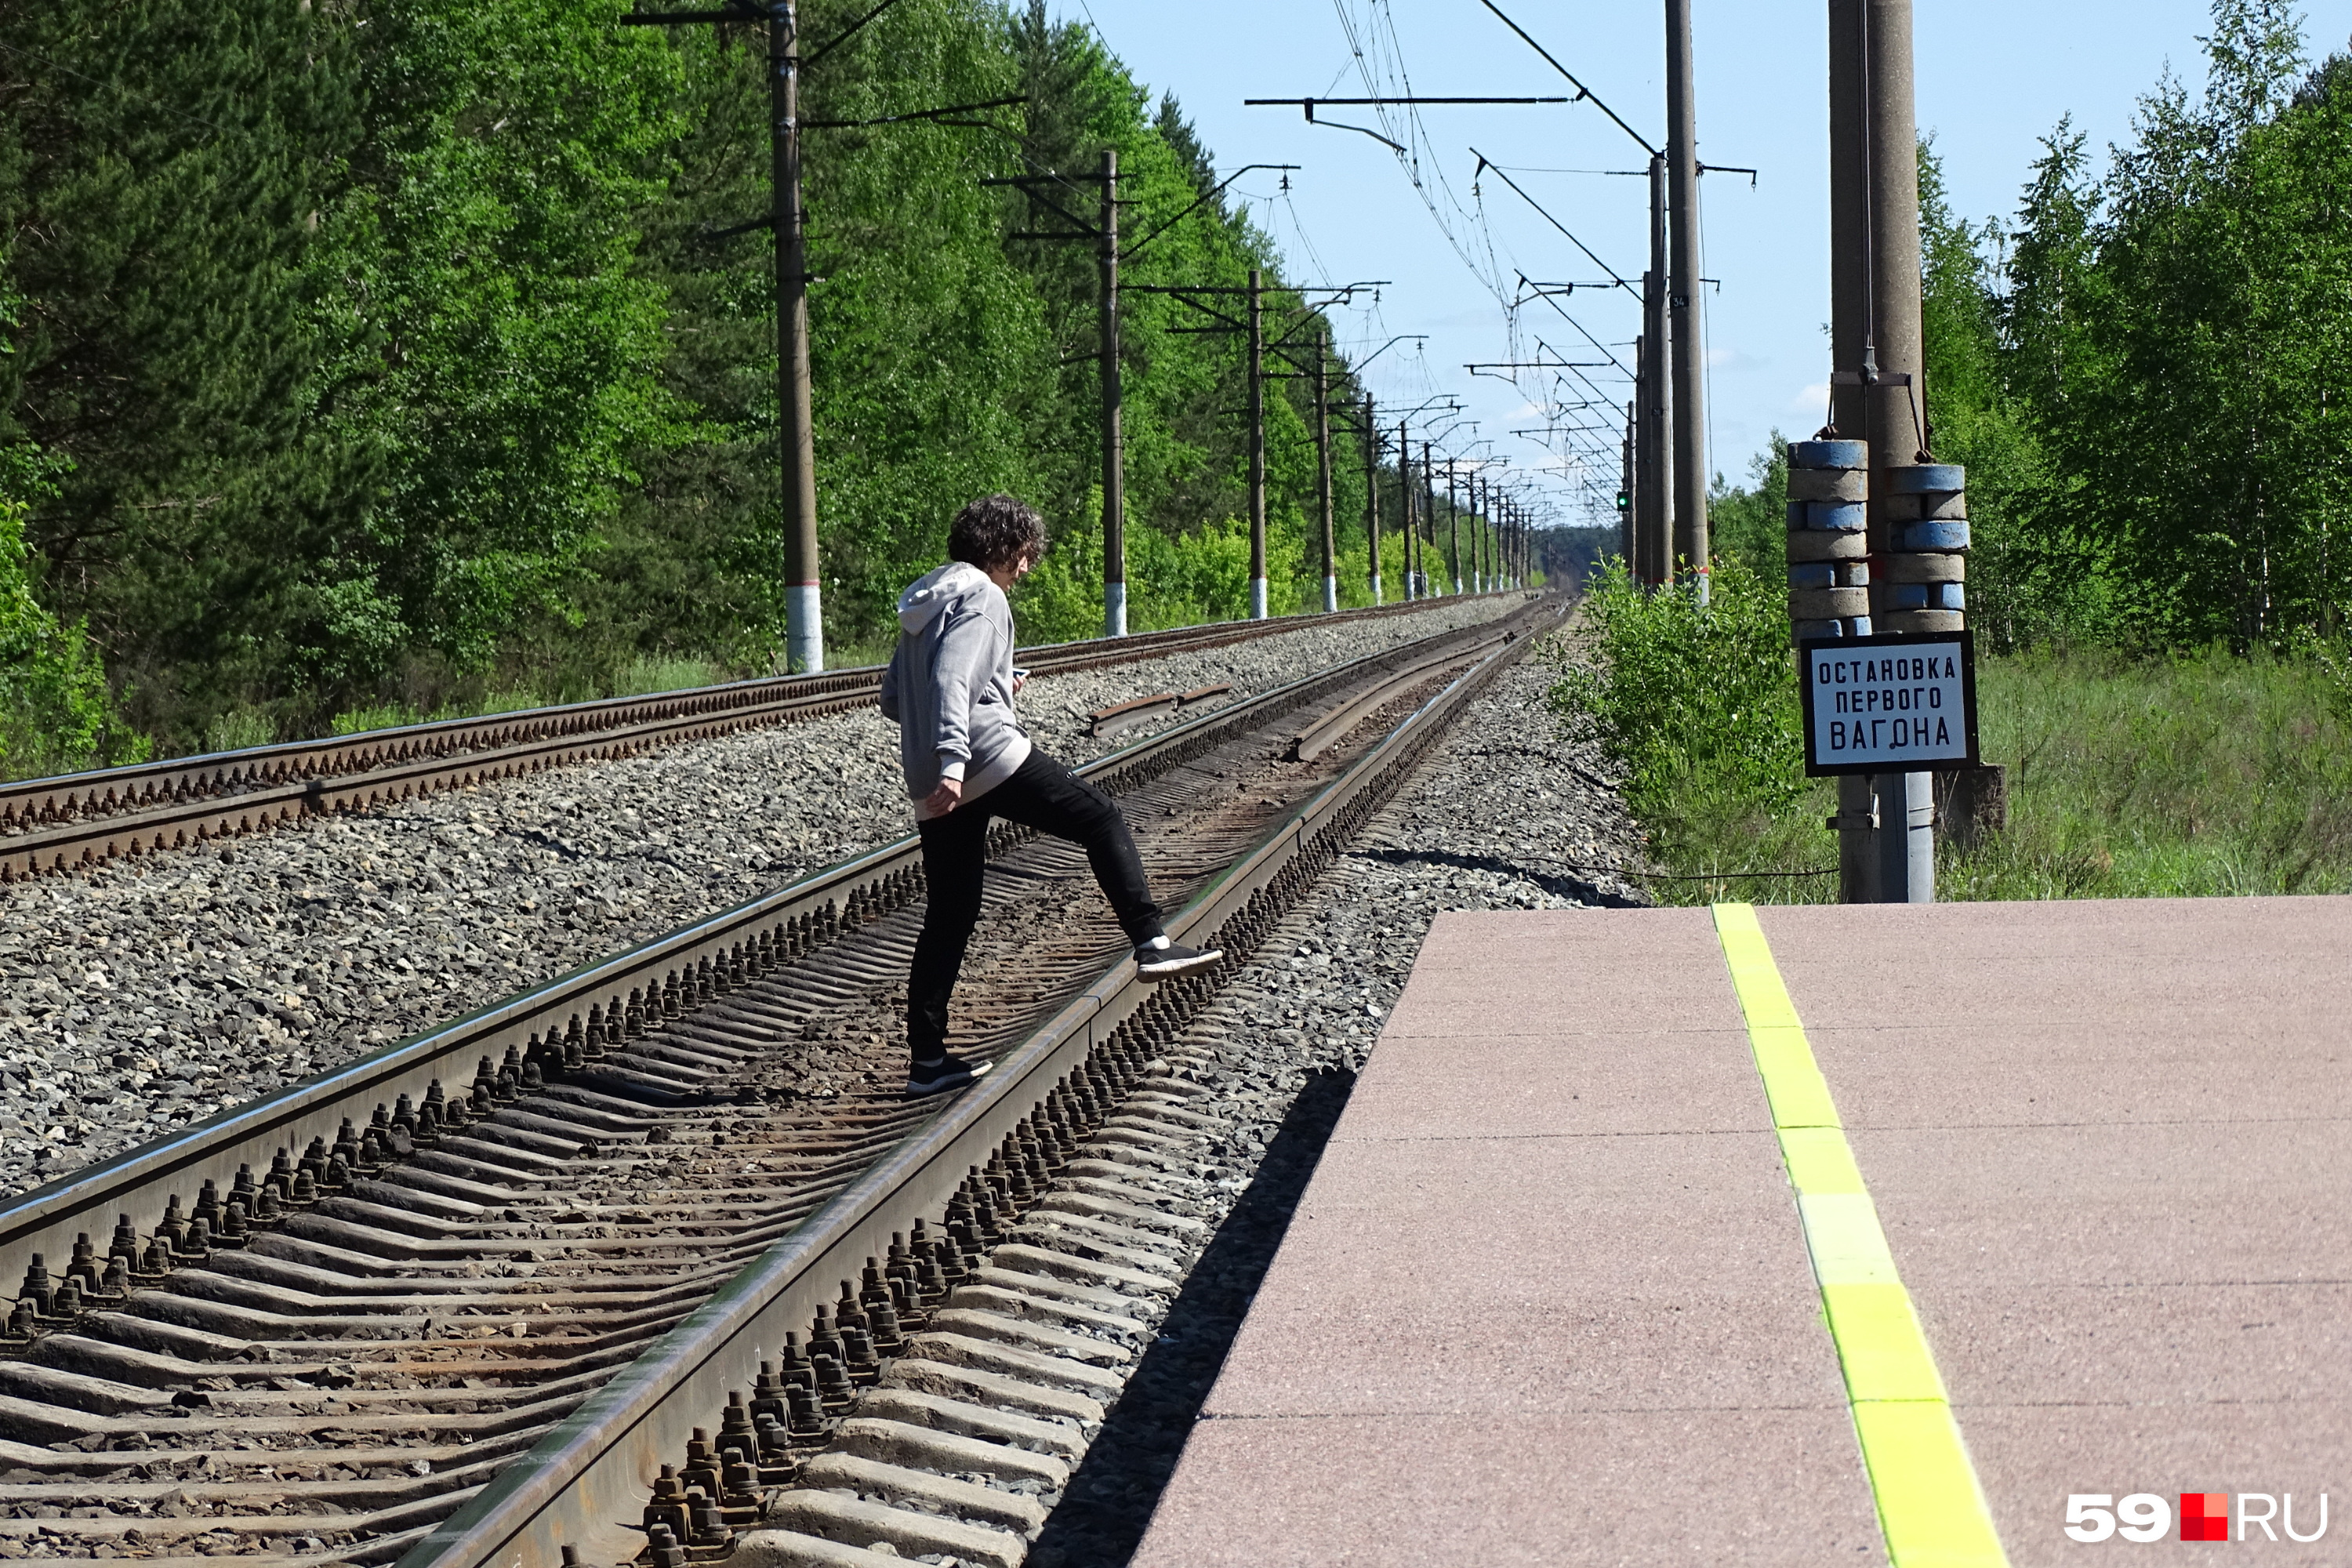 Ходить по железной дороге вне обустроенных мест опасно — и мы вам не советуем